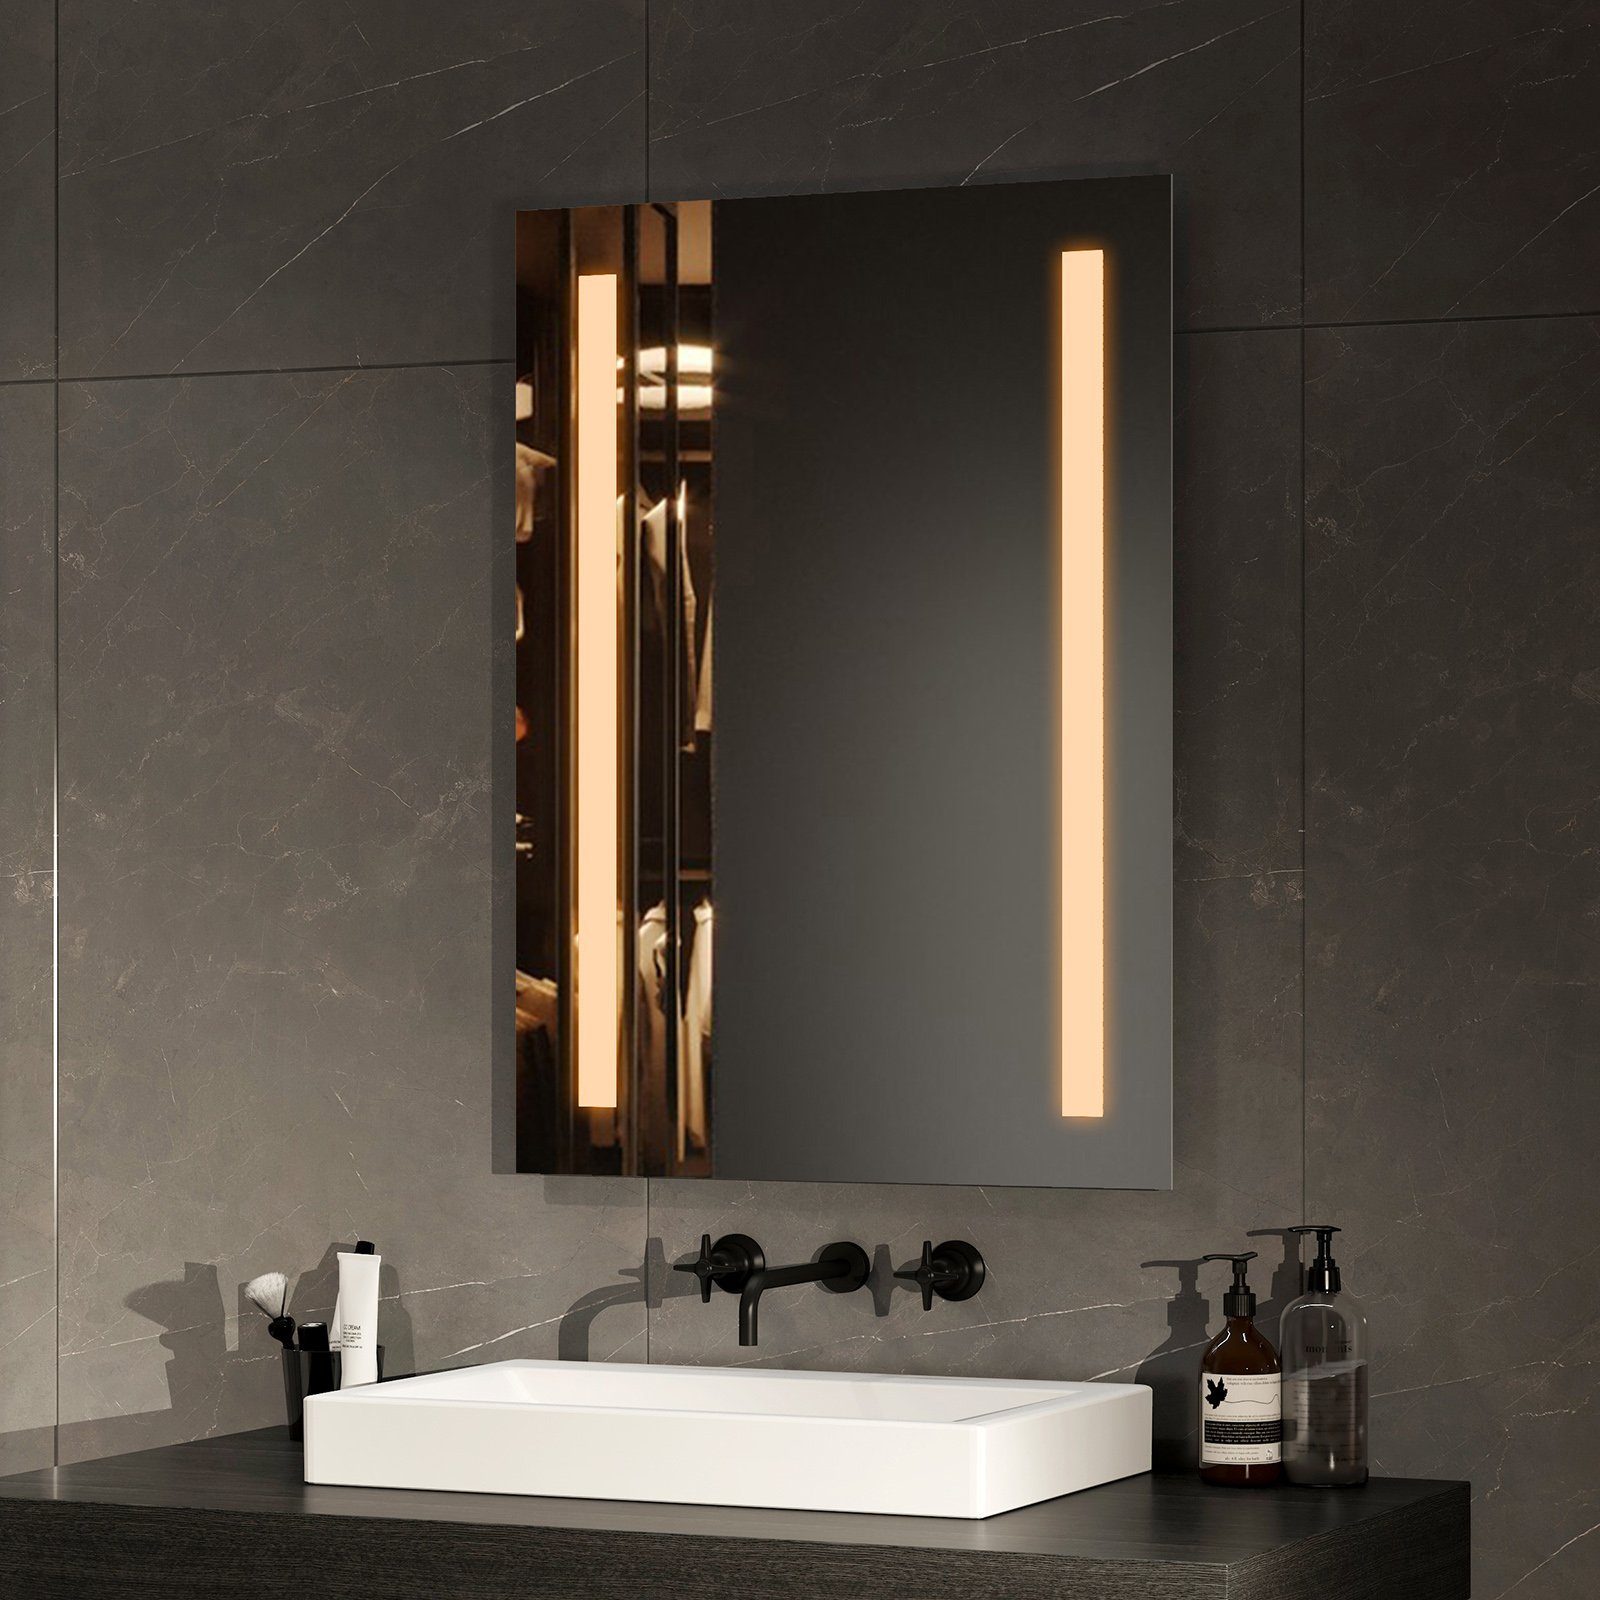 Badspiegel Lichtfarbe mit Beschlagfrei, mit Lichtspiegel, Beleuchtung 2 Warmweiß/Kaltweiß LED Taste Badspiegel und Wandspiegel EMKE